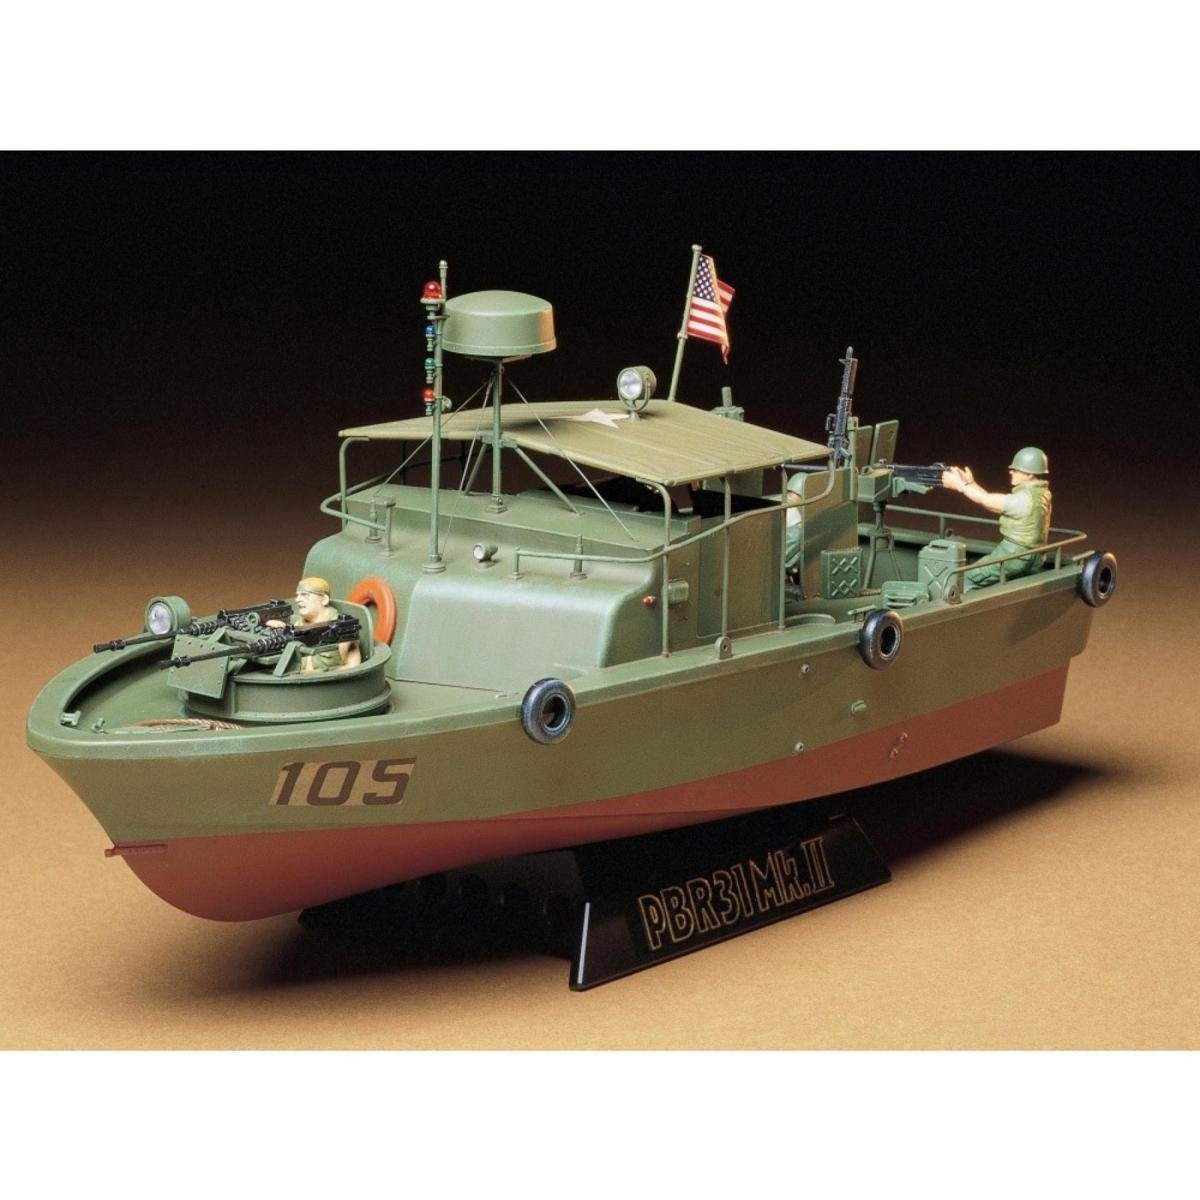 Tamiya Modellboot 300035150 - Modellbausatz,1:35 US Navy PBR 31 Mk.II...